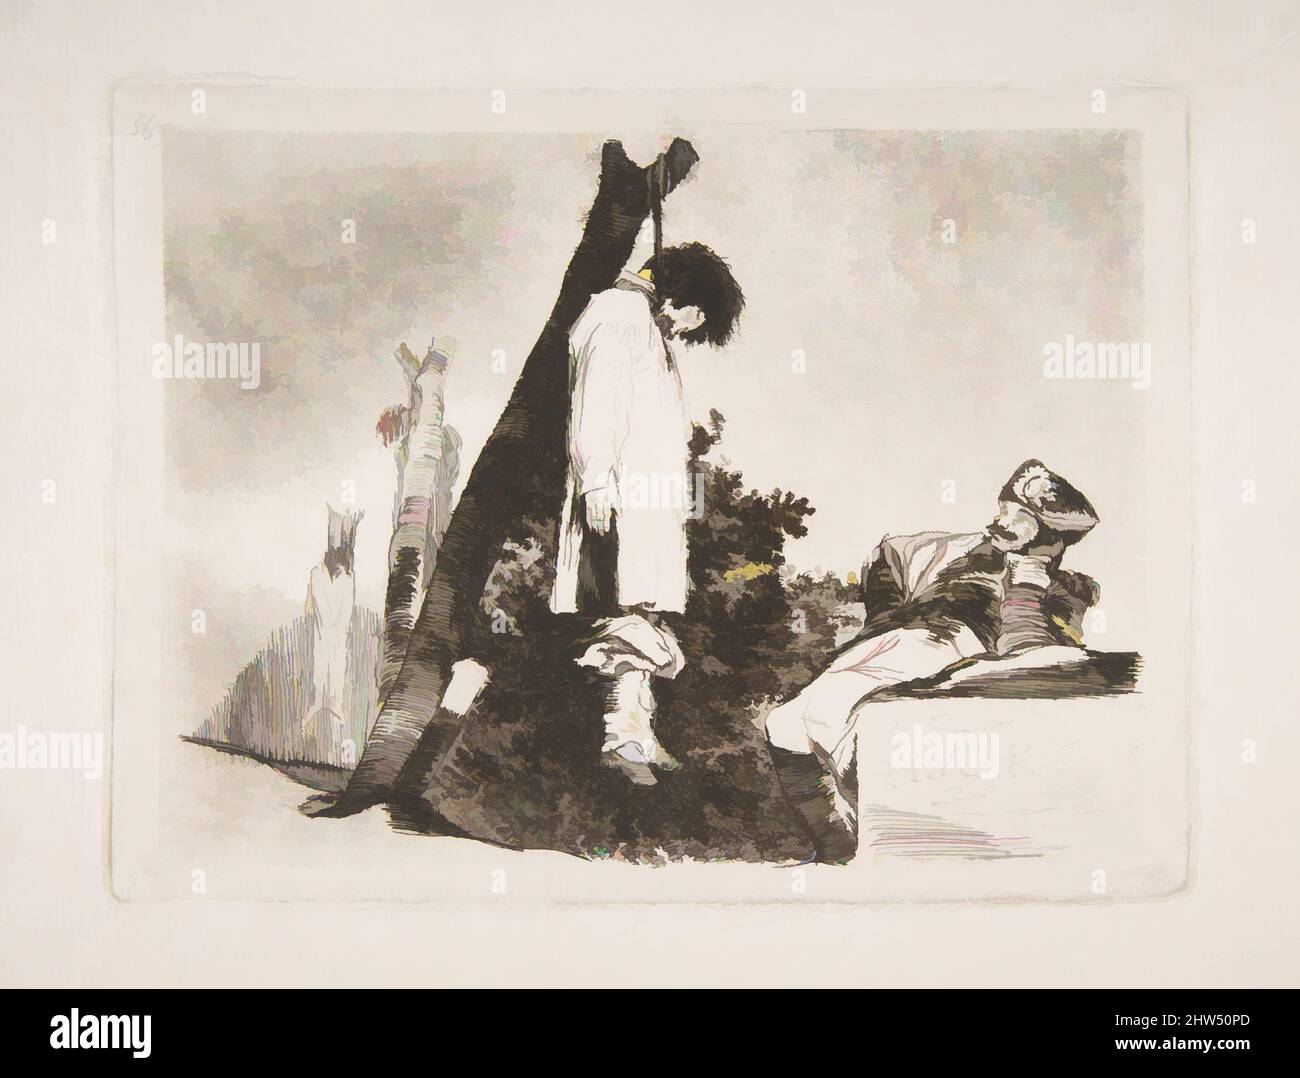 Art inspiré par la planche 36 de 'les désastres de la guerre' (Los Desastres de la Guerra): 'Pas dans ce cas non plus' (Tampoco), 1810, Etching, l'aquatint bruni, le point sec, burin, et burnisher, plaque : 6 po. × 8 1/16 po (15,3 × 20,4 cm), Prints, Goya (Francisco de Goya y Lucientes) (espagnol, oeuvres classiques modernisées par Artotop avec une touche de modernité. Formes, couleur et valeur, impact visuel accrocheur sur l'art émotions par la liberté d'œuvres d'art d'une manière contemporaine. Un message intemporel qui cherche une nouvelle direction créative. Artistes qui se tournent vers le support numérique et créent le NFT Artotop Banque D'Images